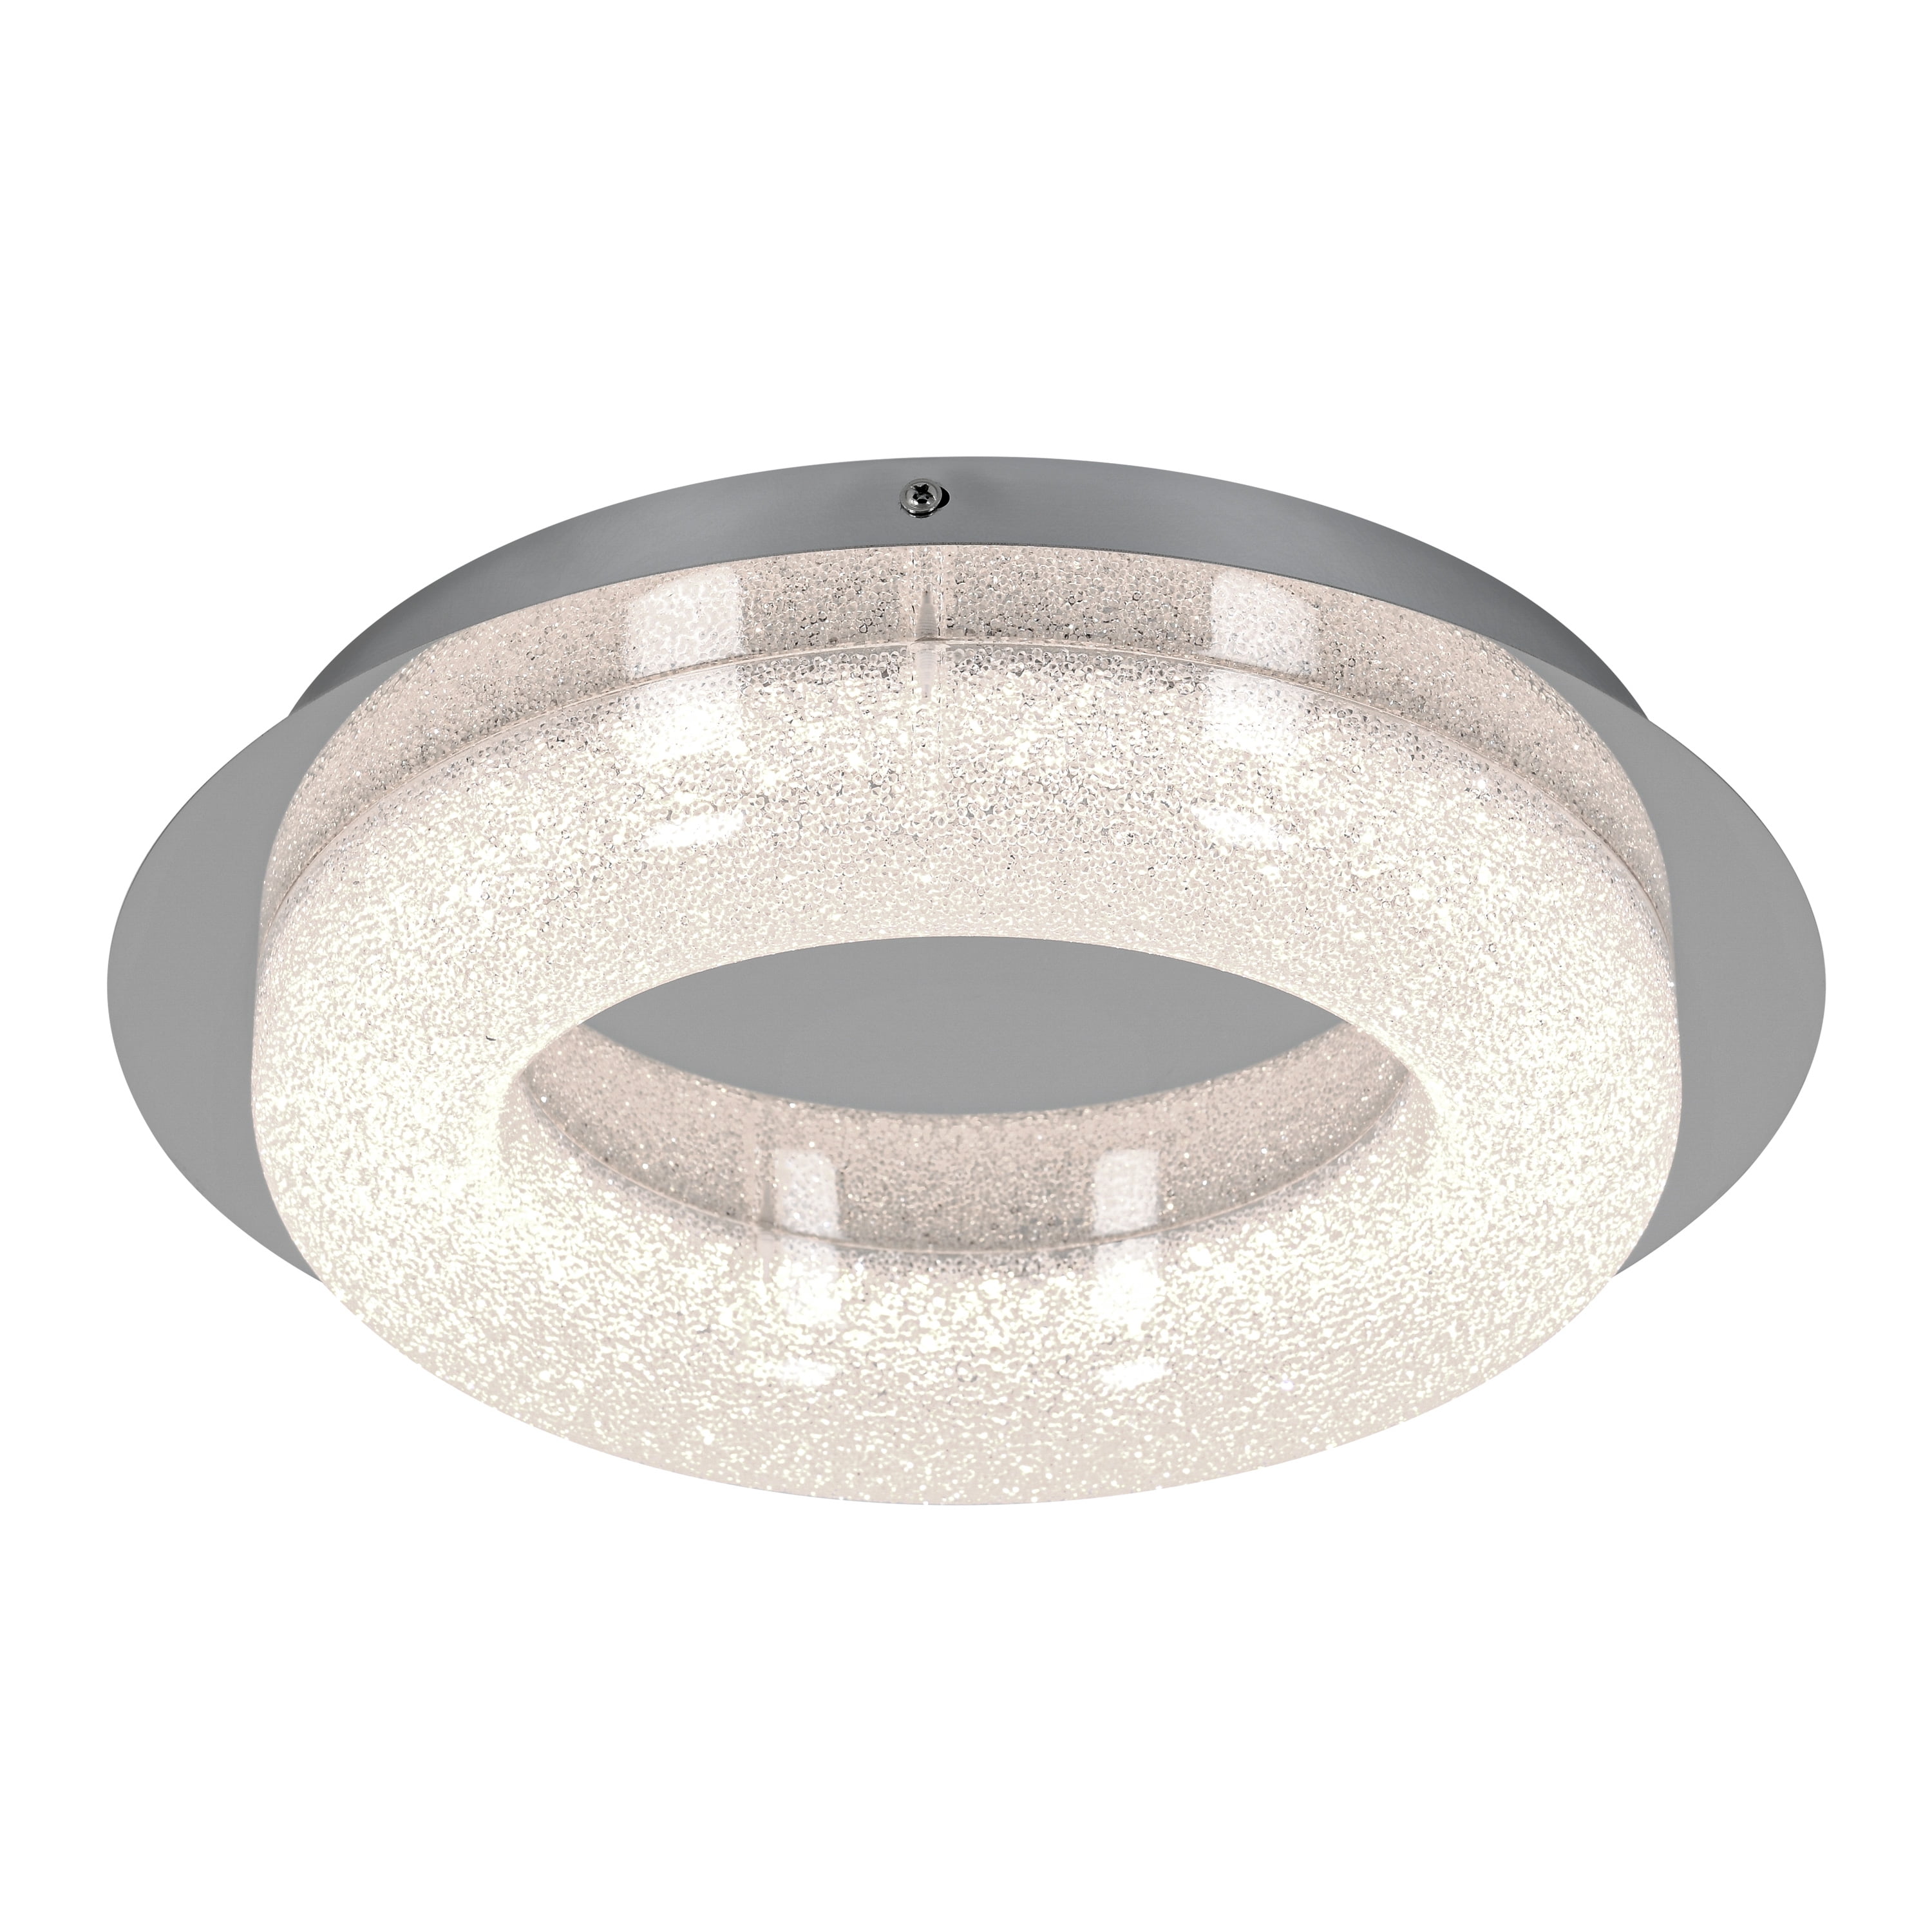 Artika Mount Famous Fixture, Light Flush Chrome One Finish Light Ceiling LED Integrated